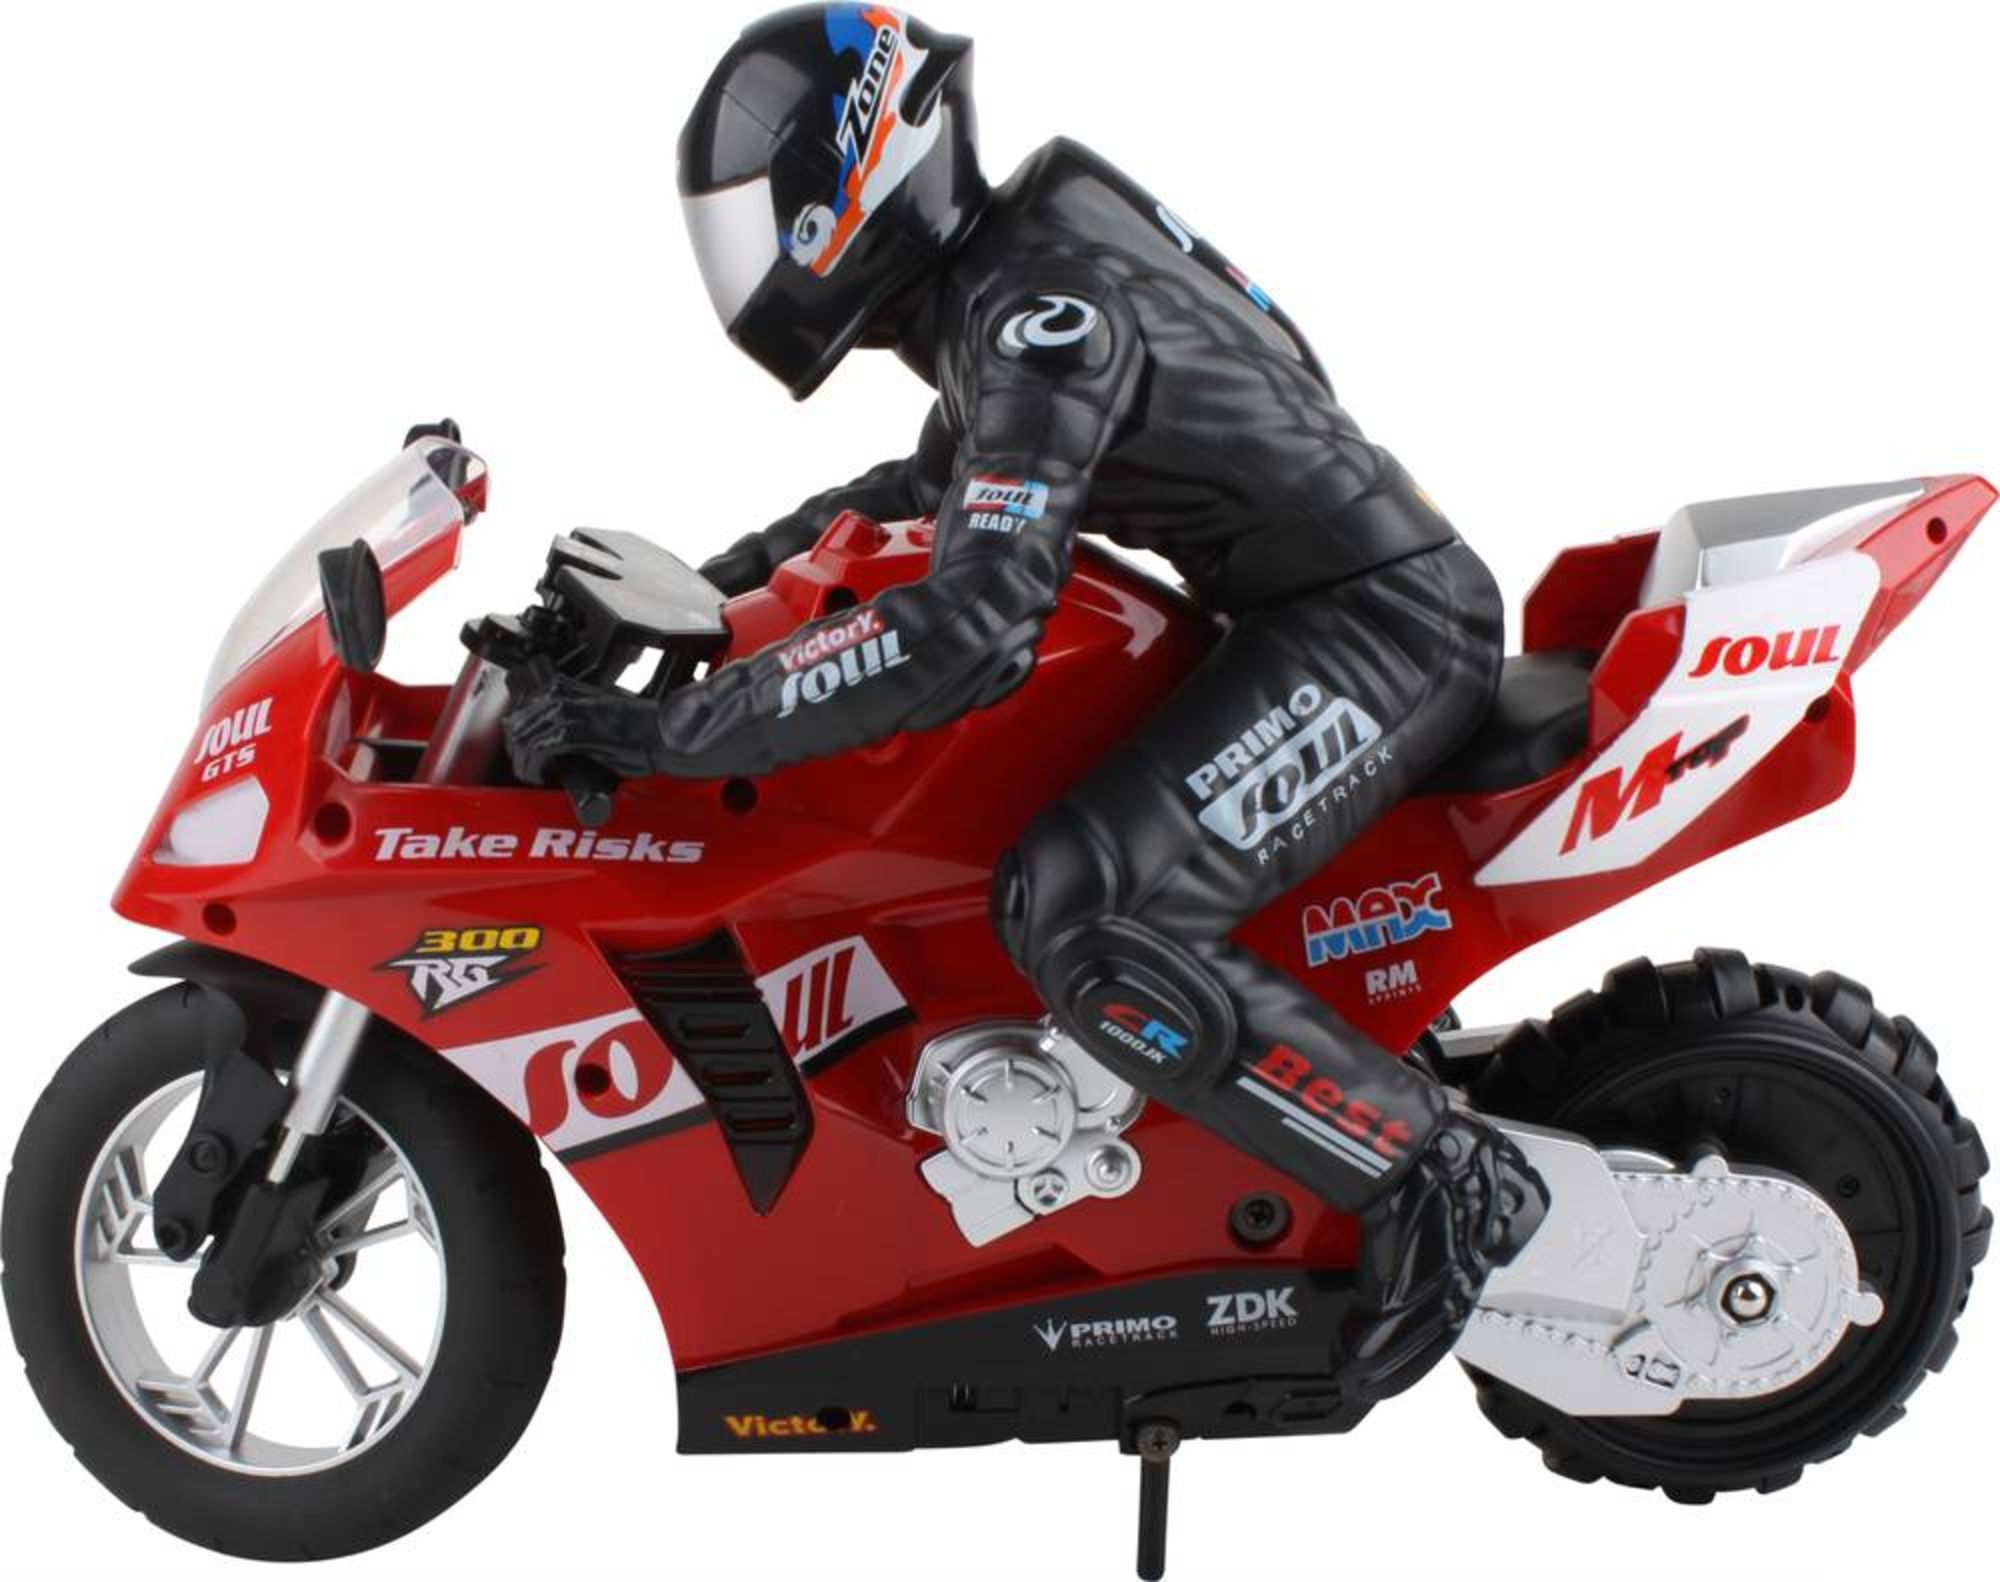 https://images.thalia.media/-/BF2000-2000/0db8976519954ac59289bd2f2b3c3c33/2436324-stunt-motorcycle-1-6-rc-einsteiger-motorrad-motorrad-inkl-akku-und-ladekabel-mit-lichteffekt-mit-geraeuschefunktion.jpeg